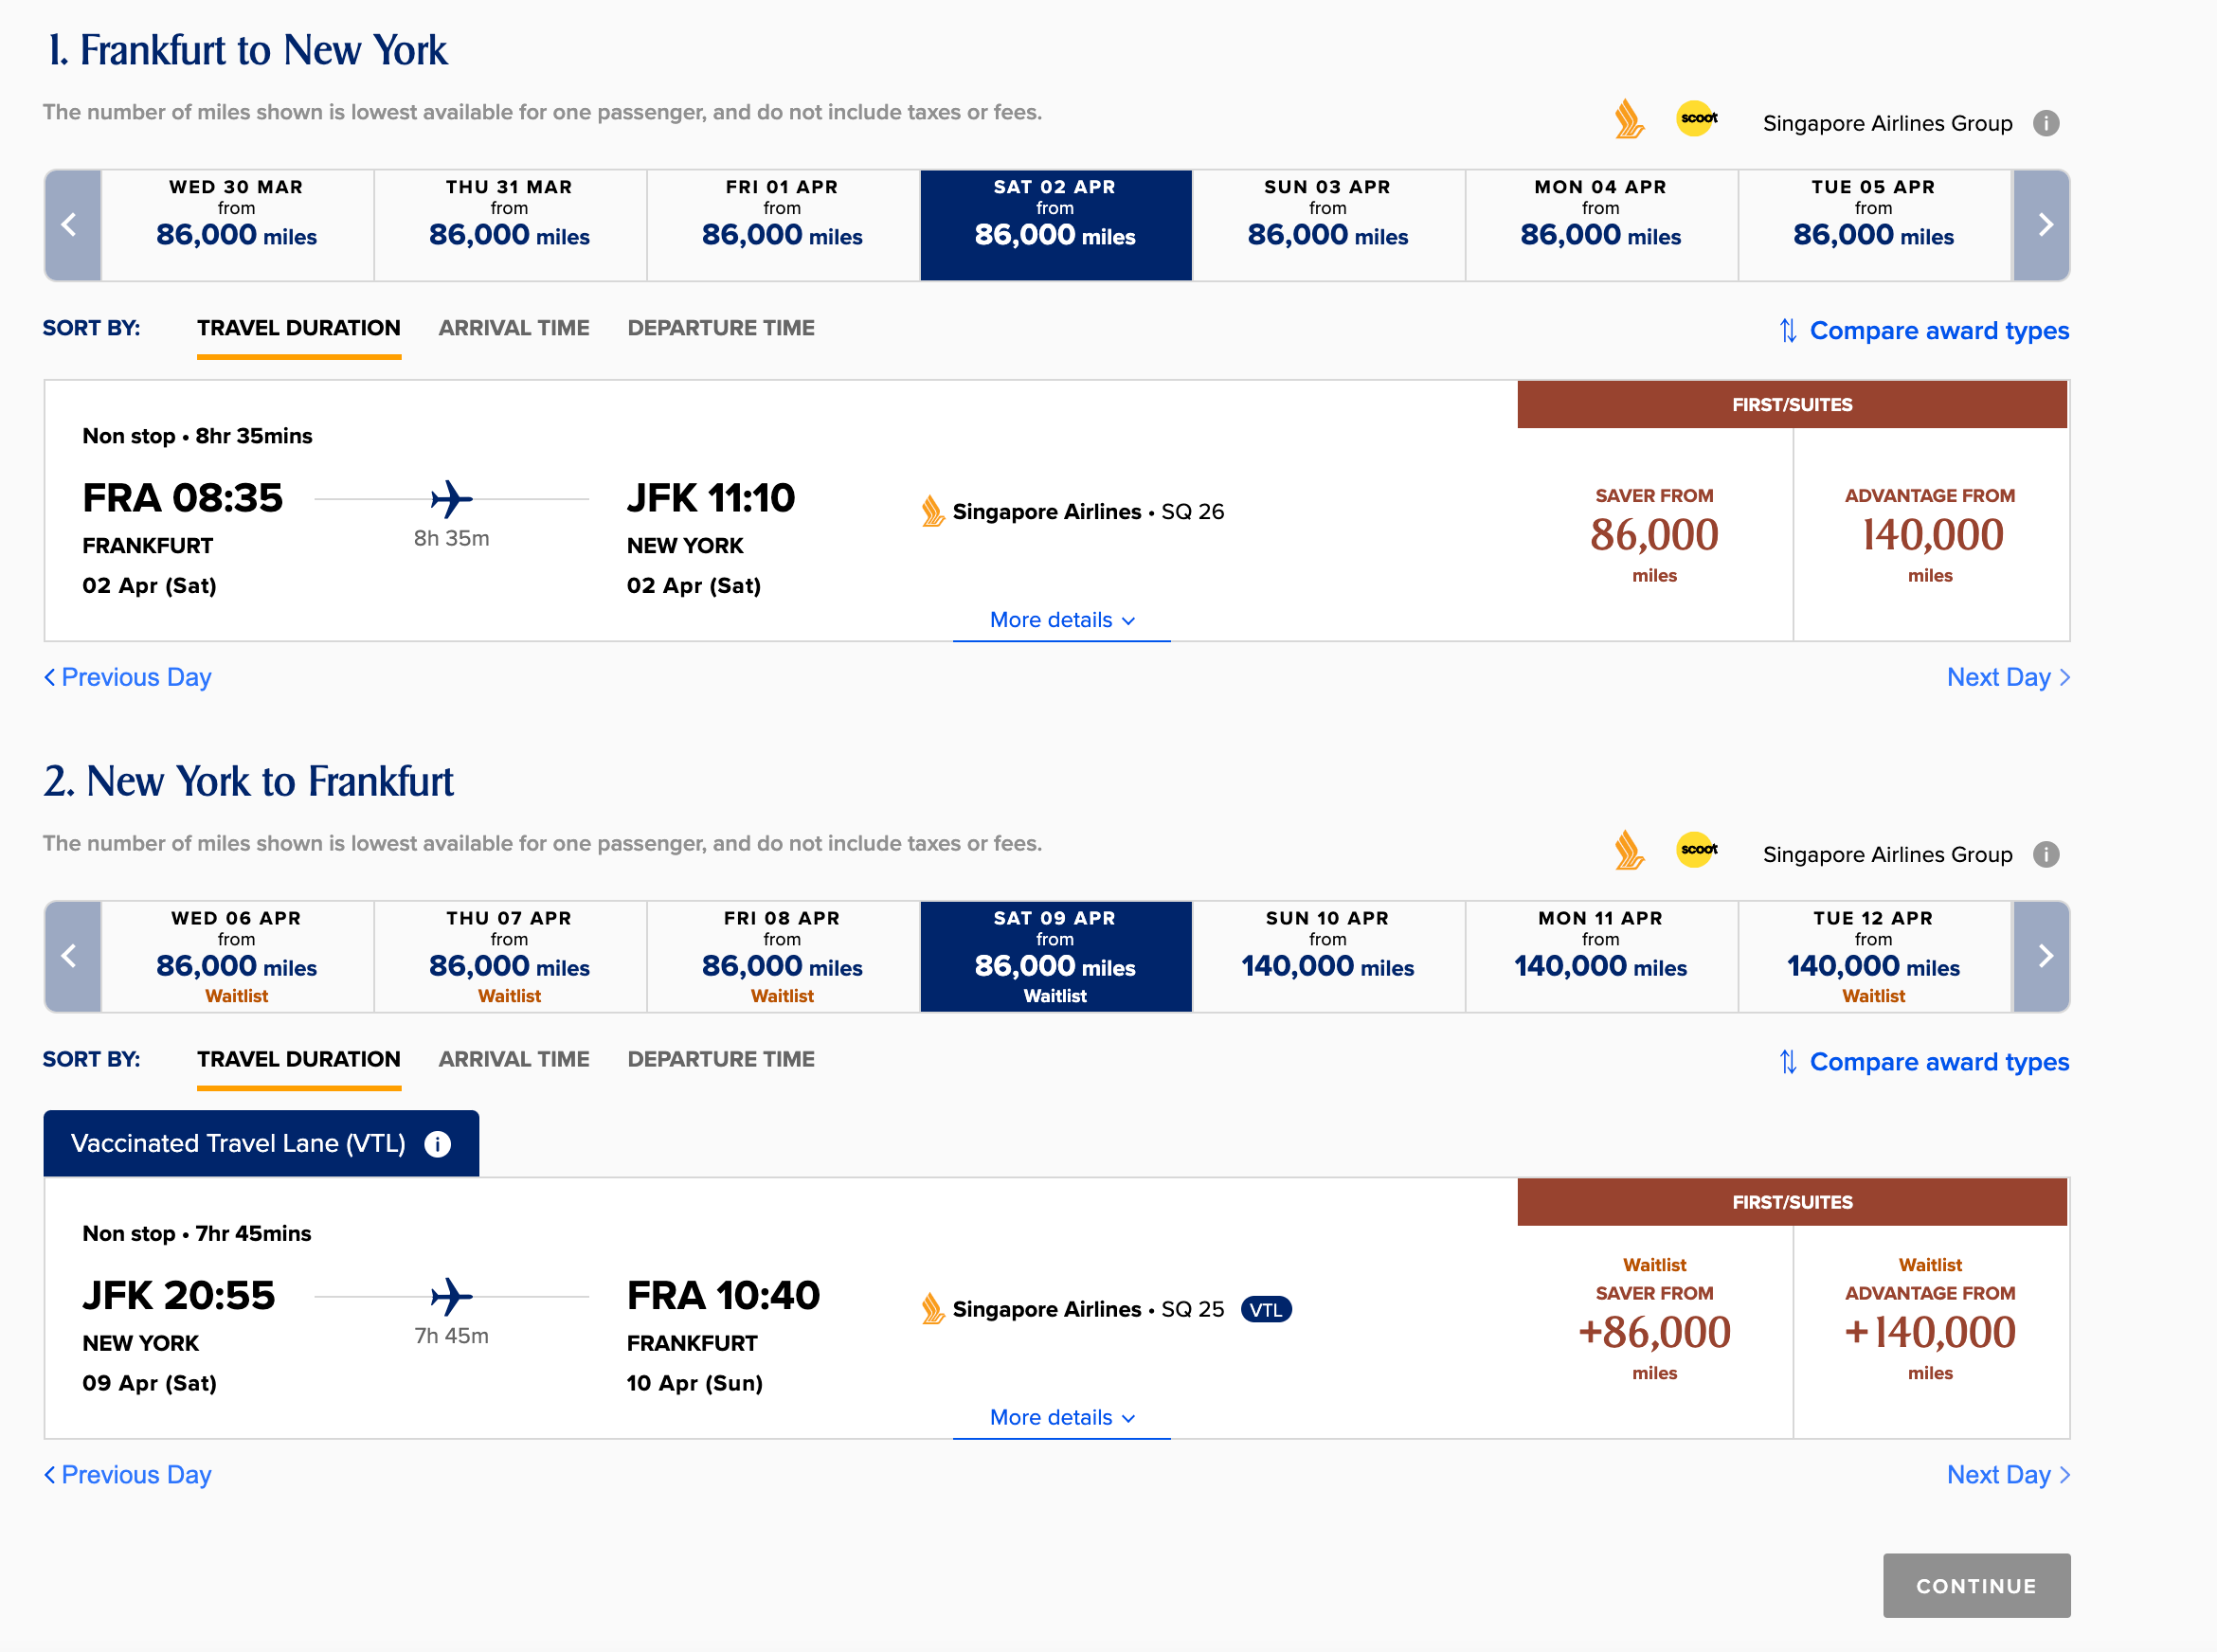  Pris tilgjengelighet mellom Frankfurt og New York. (Skjermbilde gjengitt Med Tillatelse Fra Singapore Airlines)